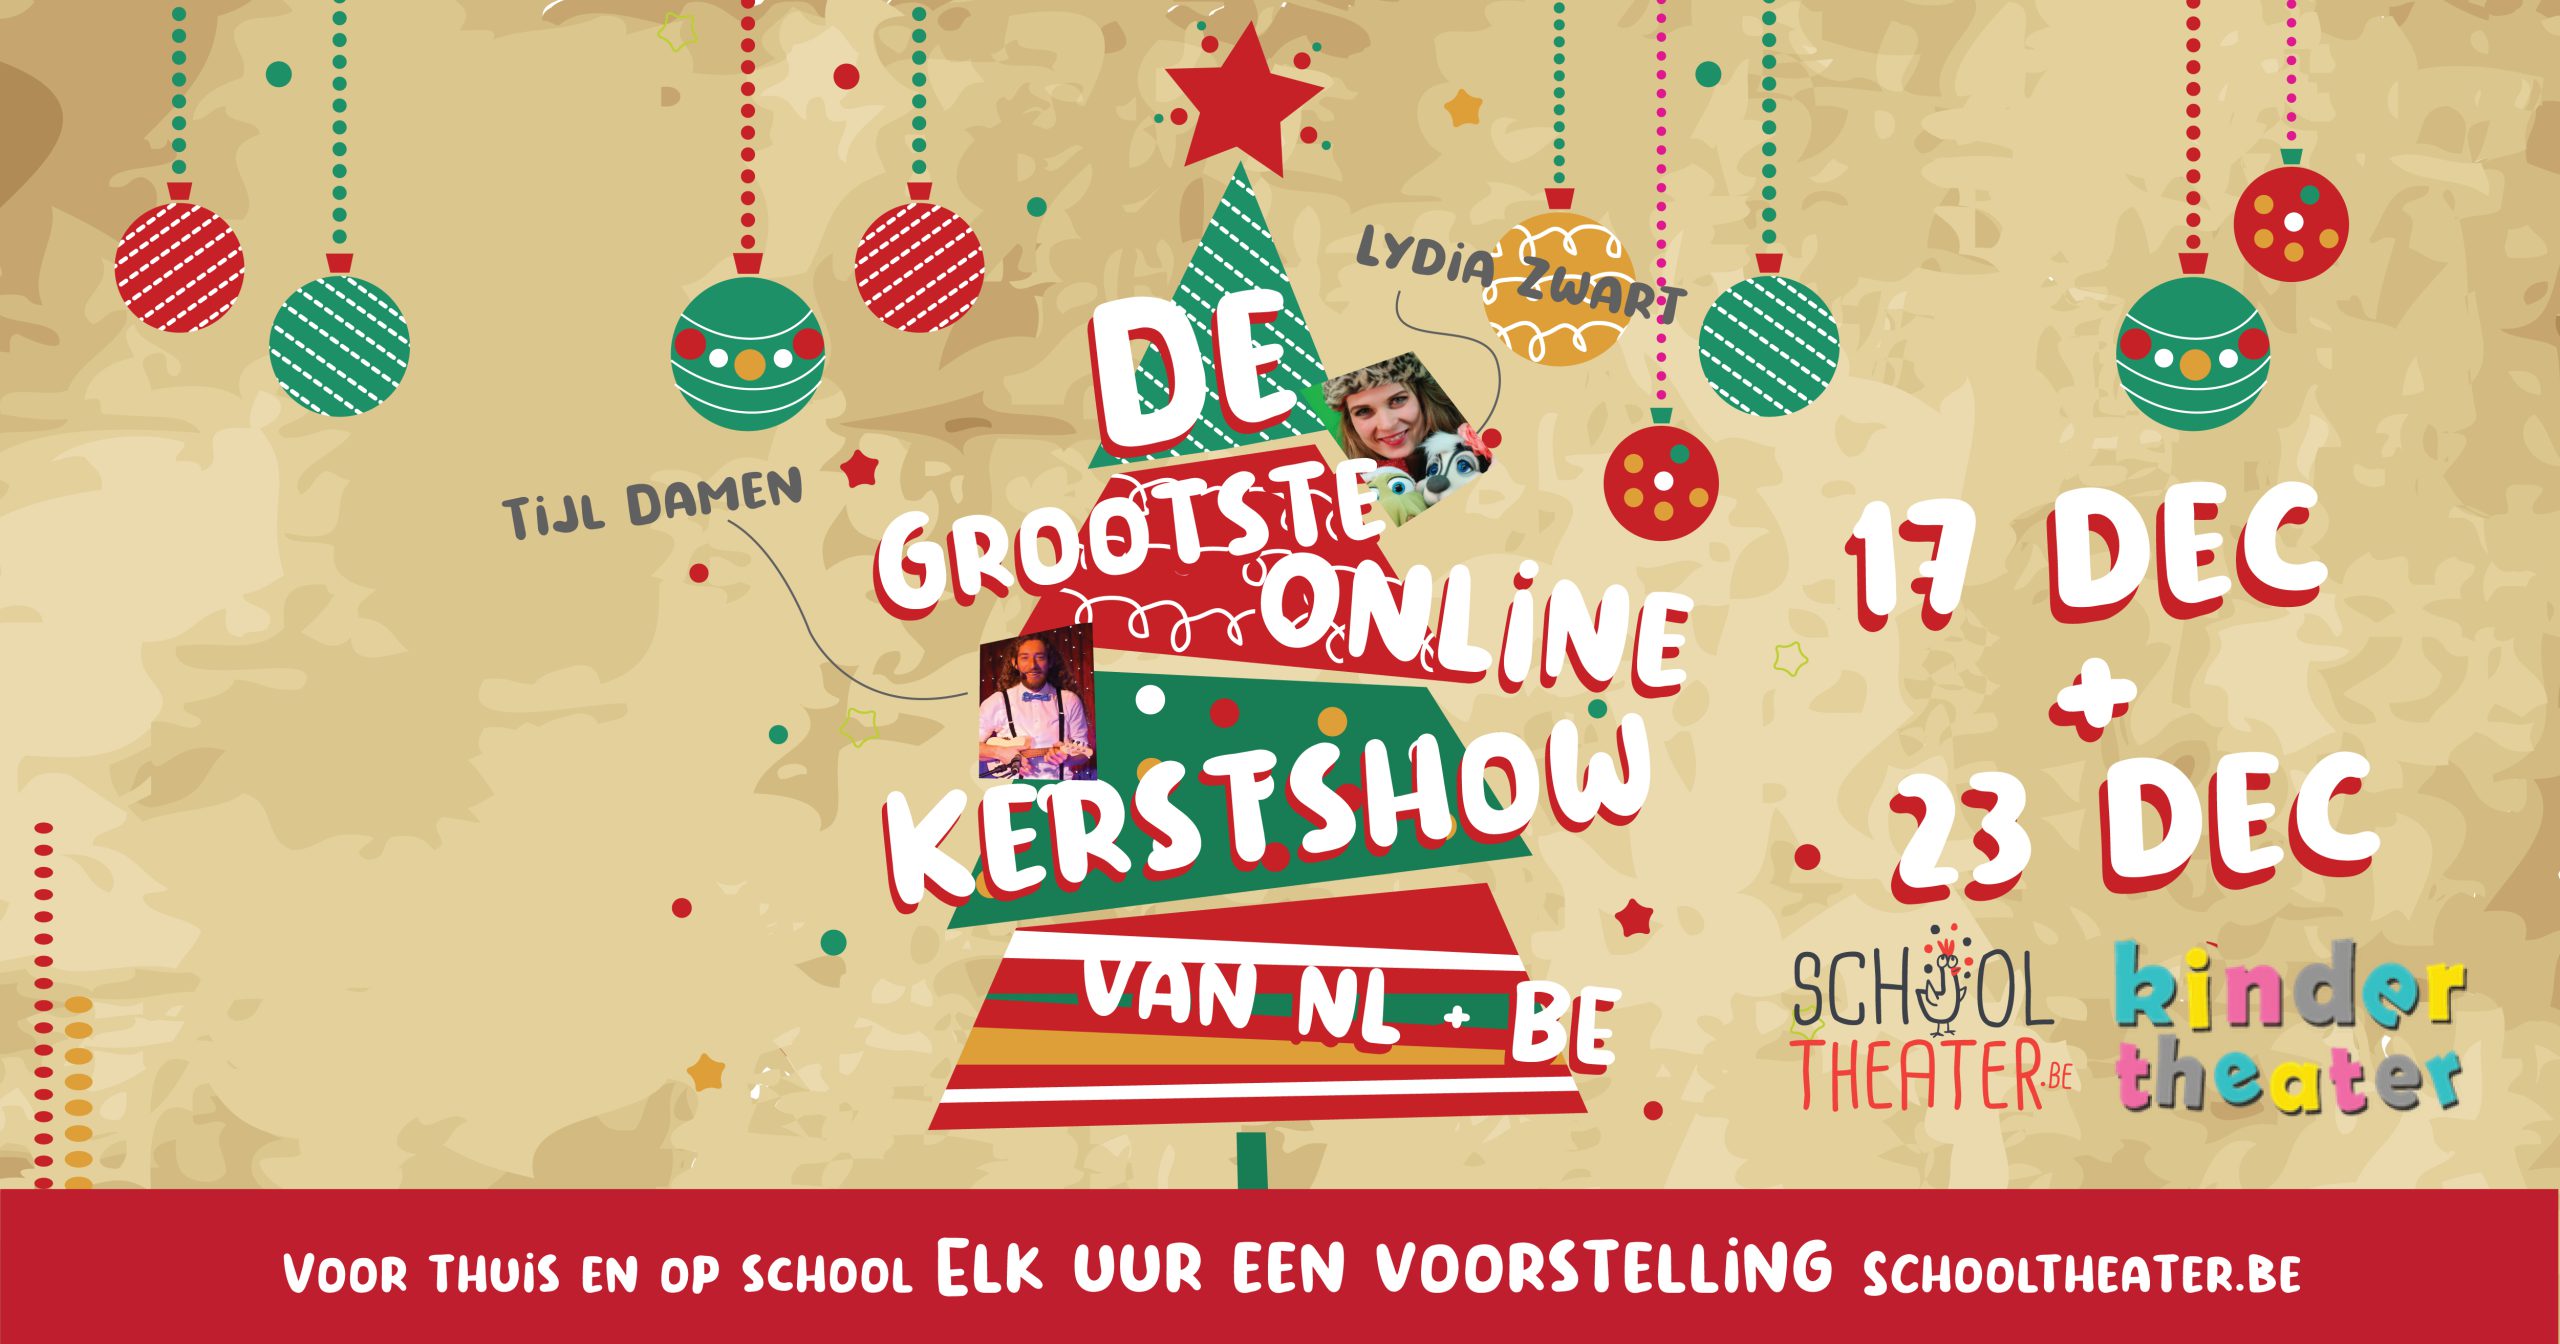 De grootste ONLINE Kerstshow van Nederland & België (met kortingscode)